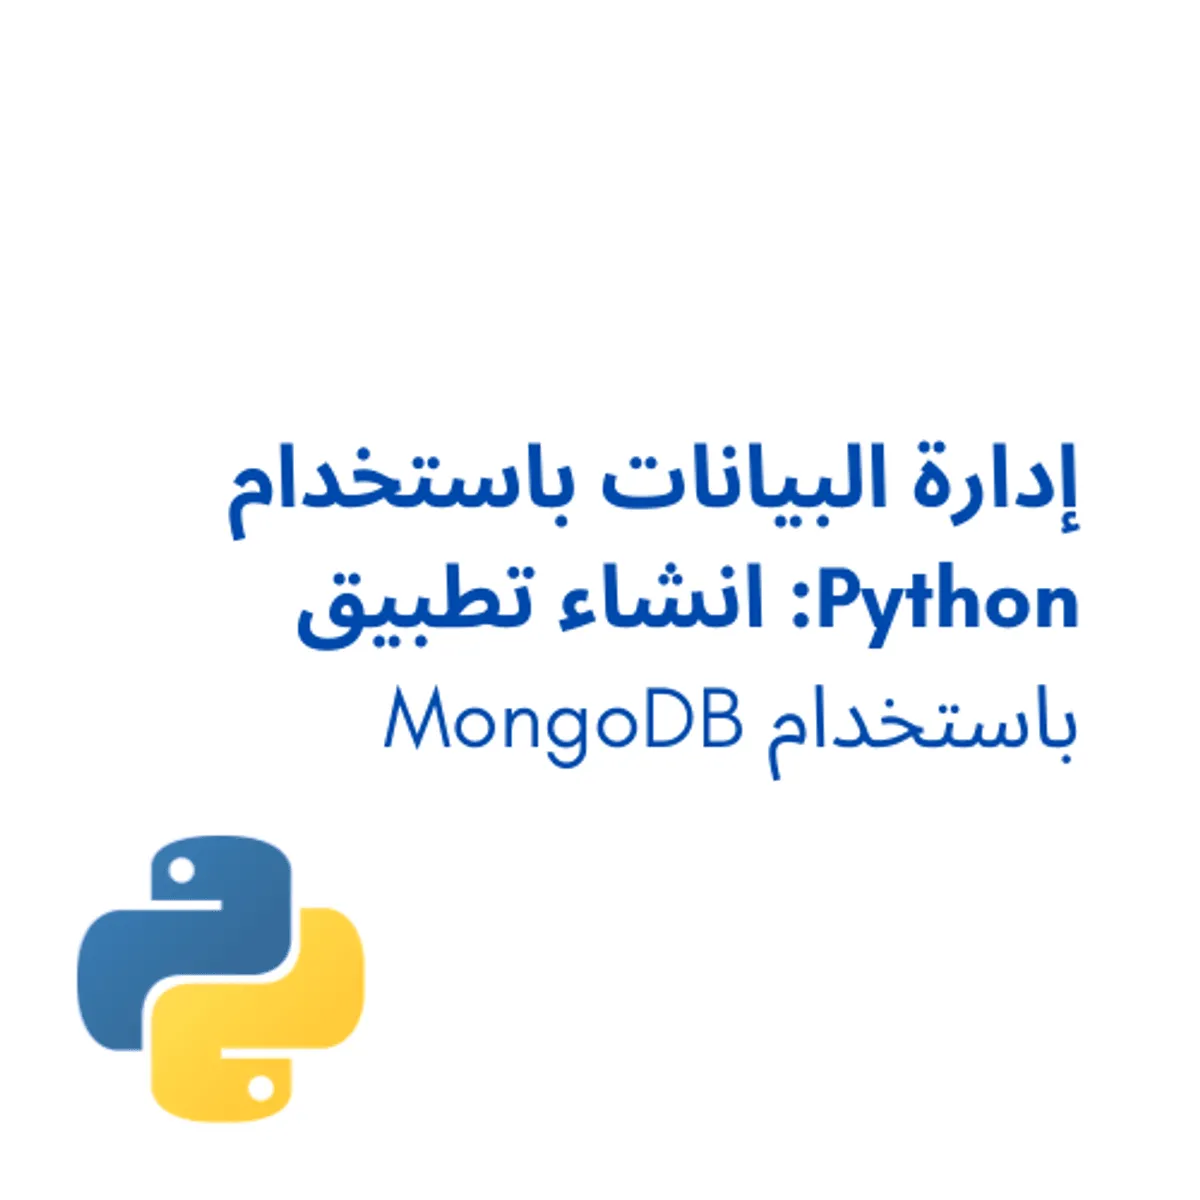 إدارة البيانات باستخدام Python: انشئ تطبيق باستخدام MongoDB